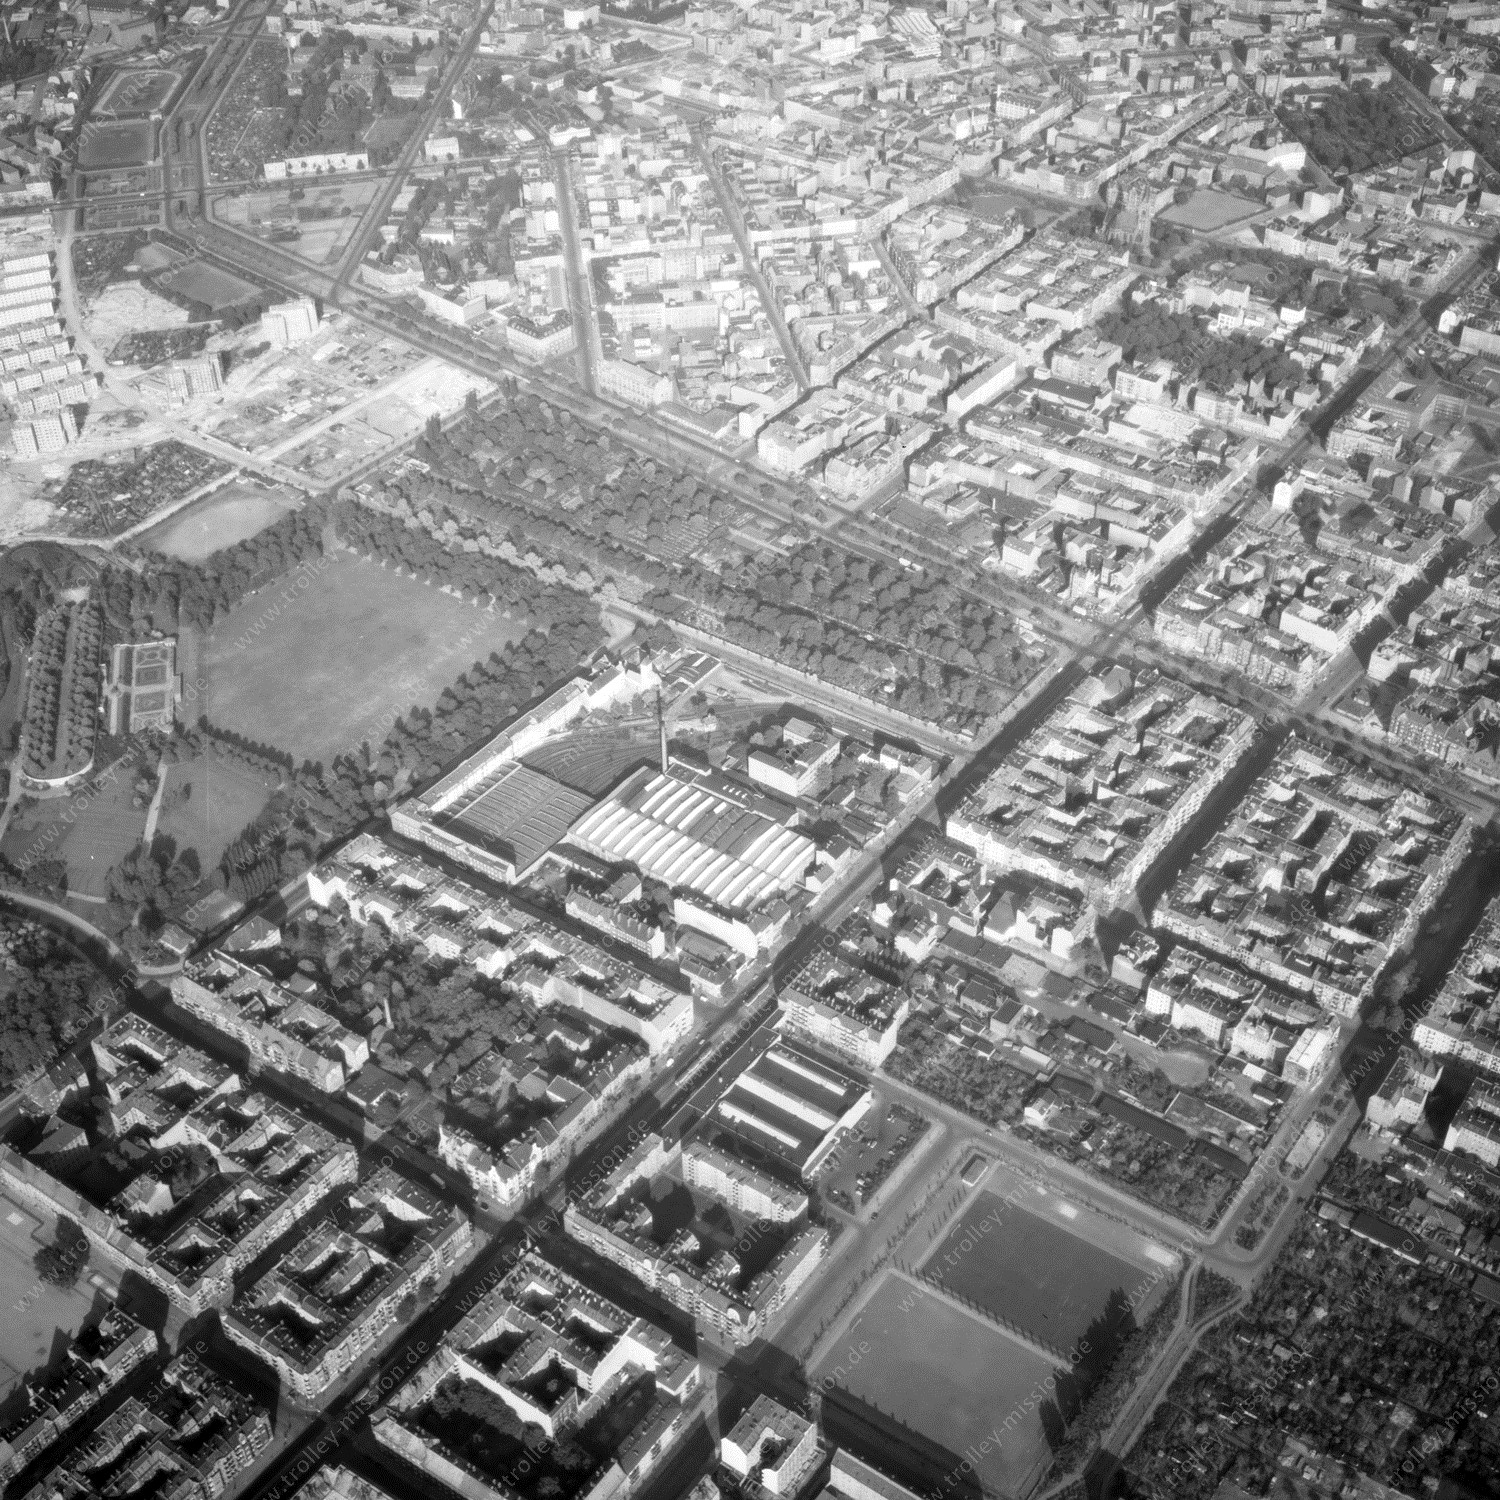 Alte Fotos und Luftbilder von Berlin - Luftbildaufnahme Nr. 12 - Historische Luftaufnahmen von West-Berlin aus dem Jahr 1954 - Flugstrecke Oscar